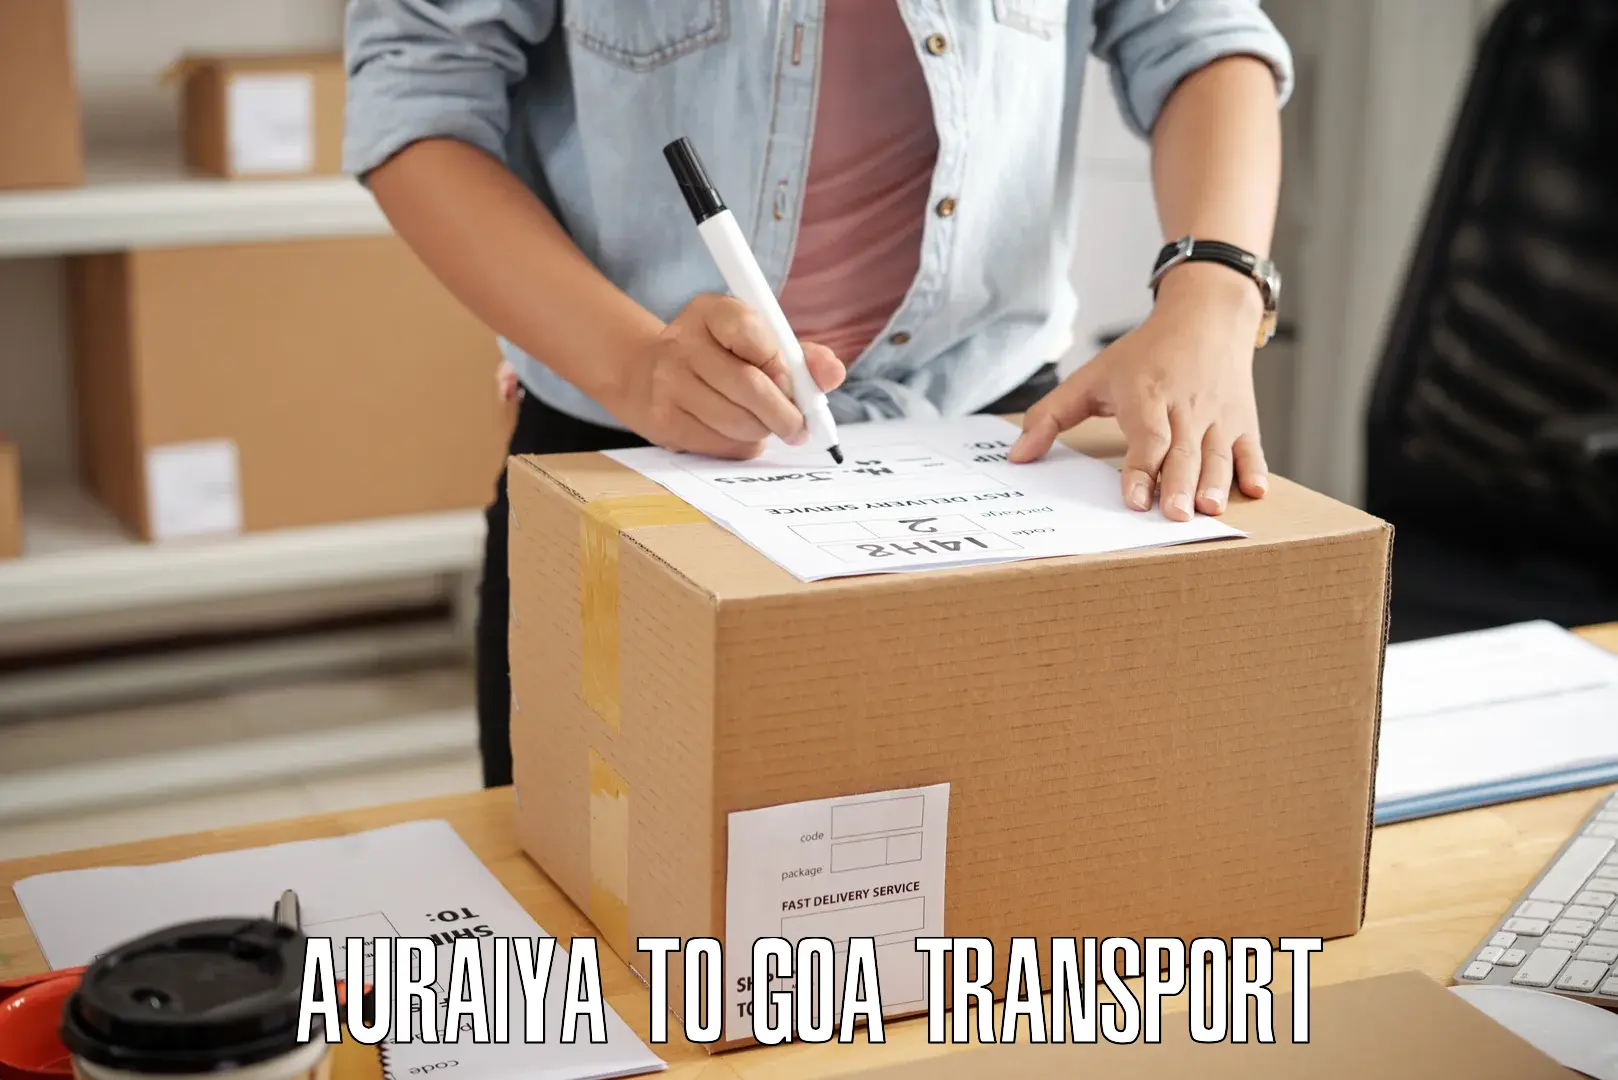 Furniture transport service Auraiya to Panaji